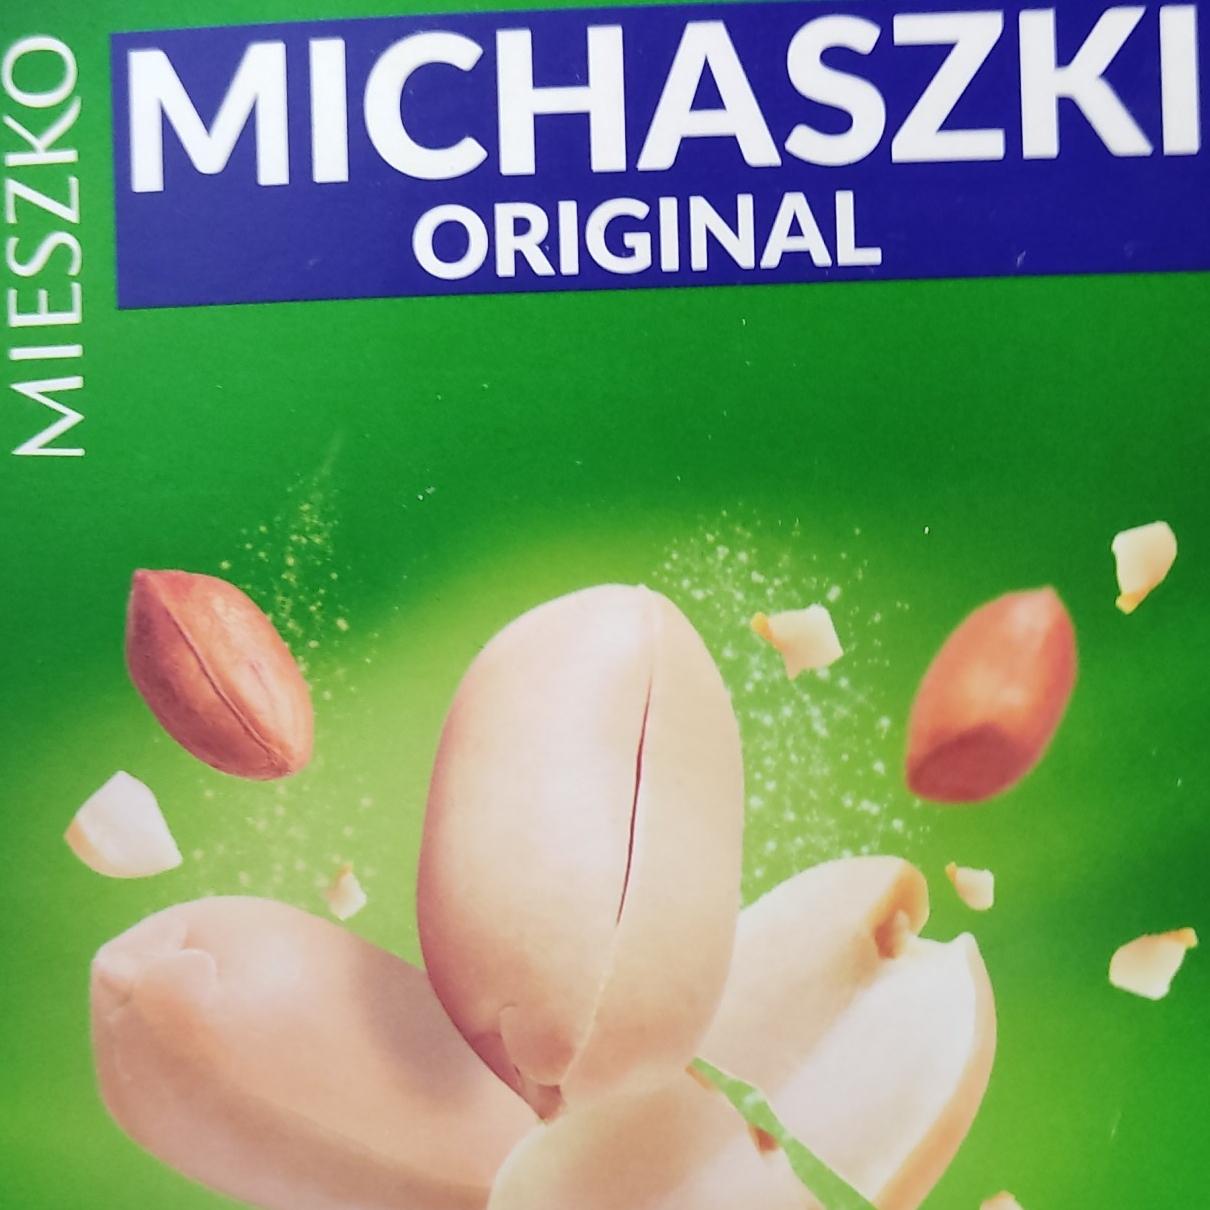 Фото - шоколадгные конфеты с арахисом michaszki original Mieszko